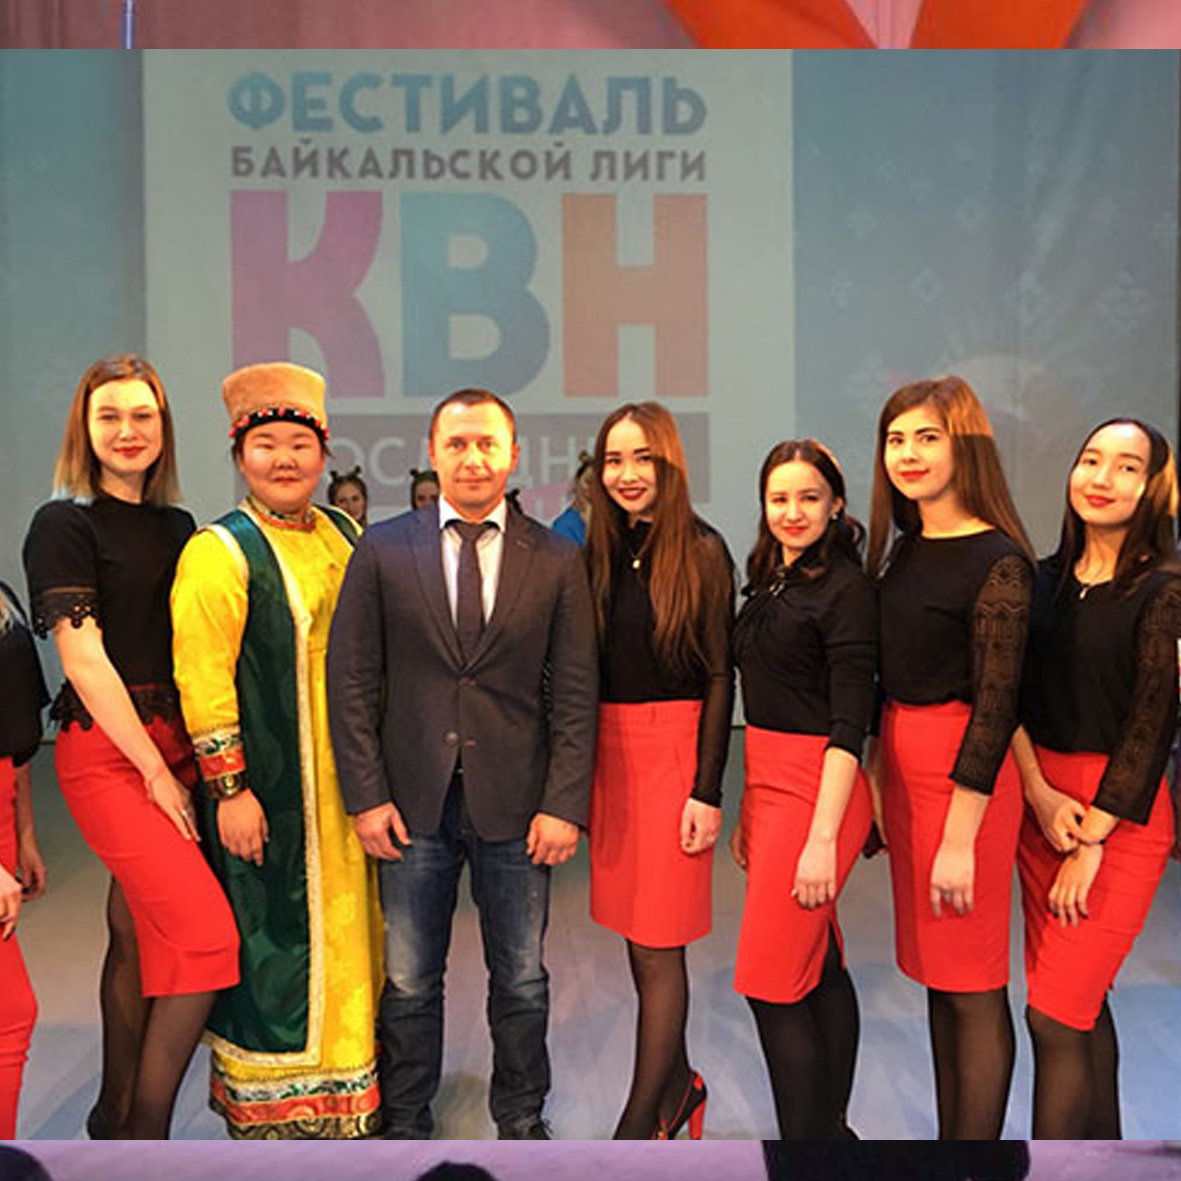 Команда КВН "Бохан" вылетела в Моску на 1/4 финала телевизионного проекта Детский КВН